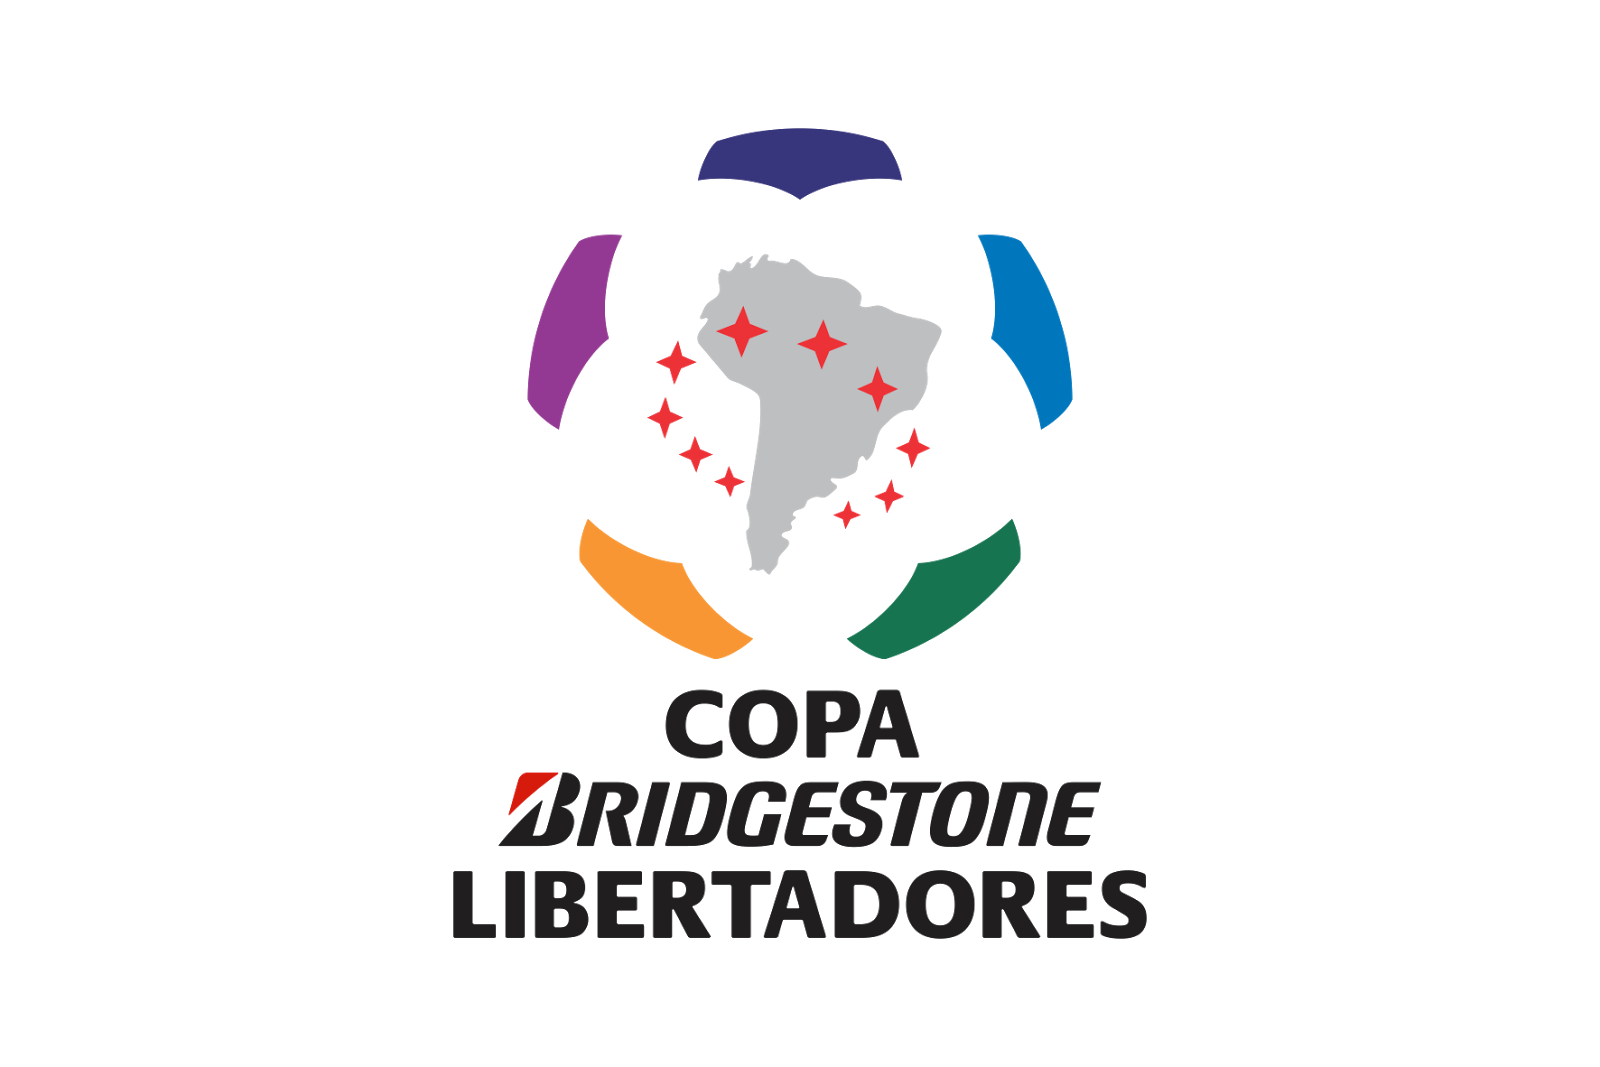 Copa Libertadores Logos